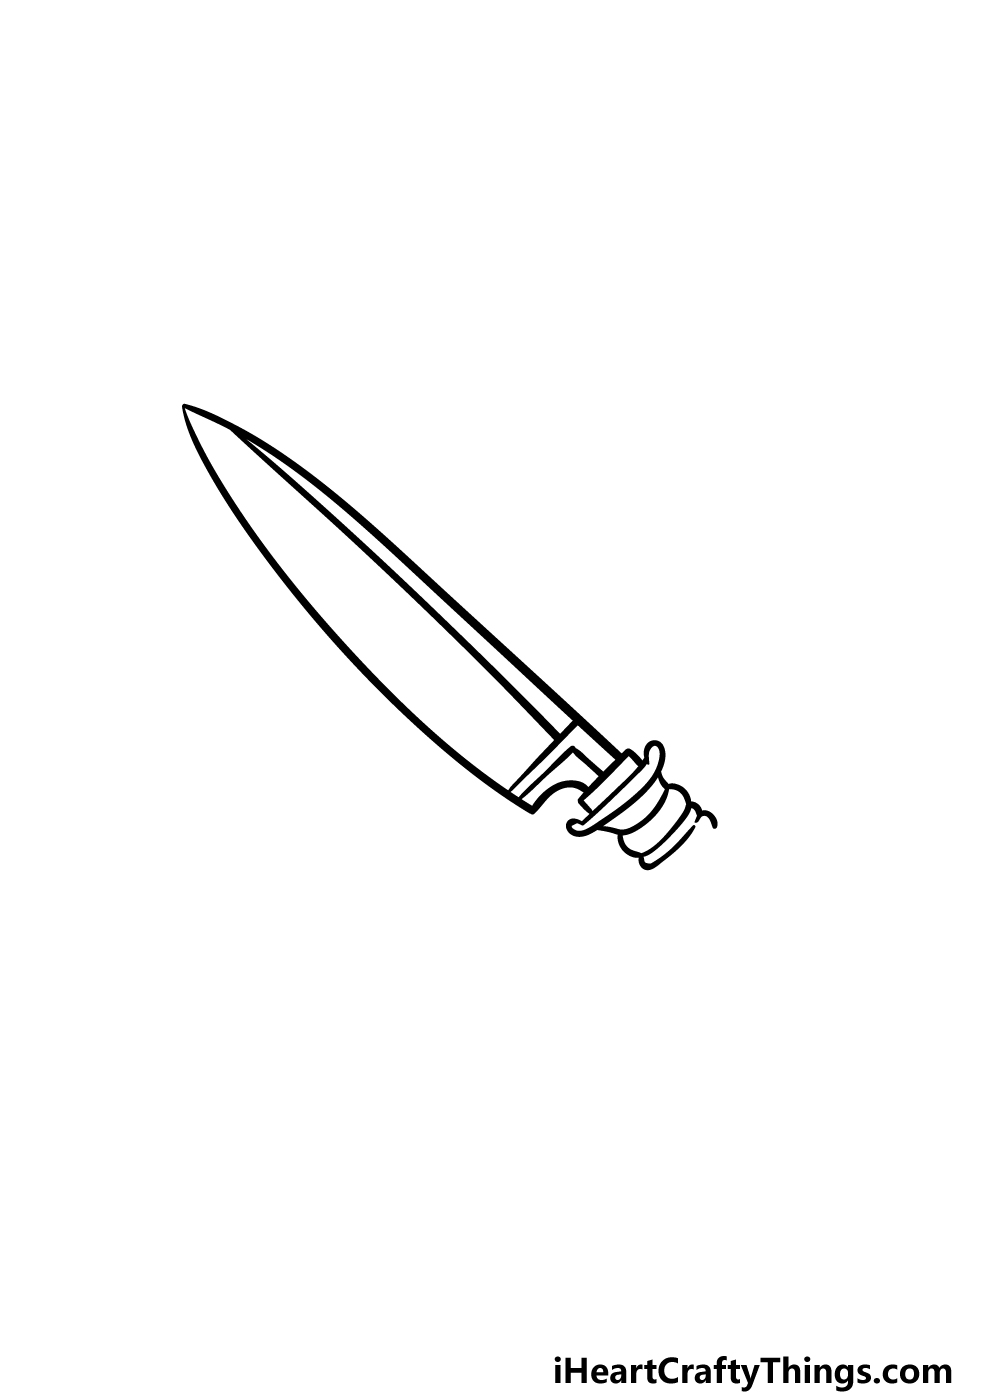 3 113 - Hướng dẫn cách vẽ con dao đơn giản với 6 bước cơ bản